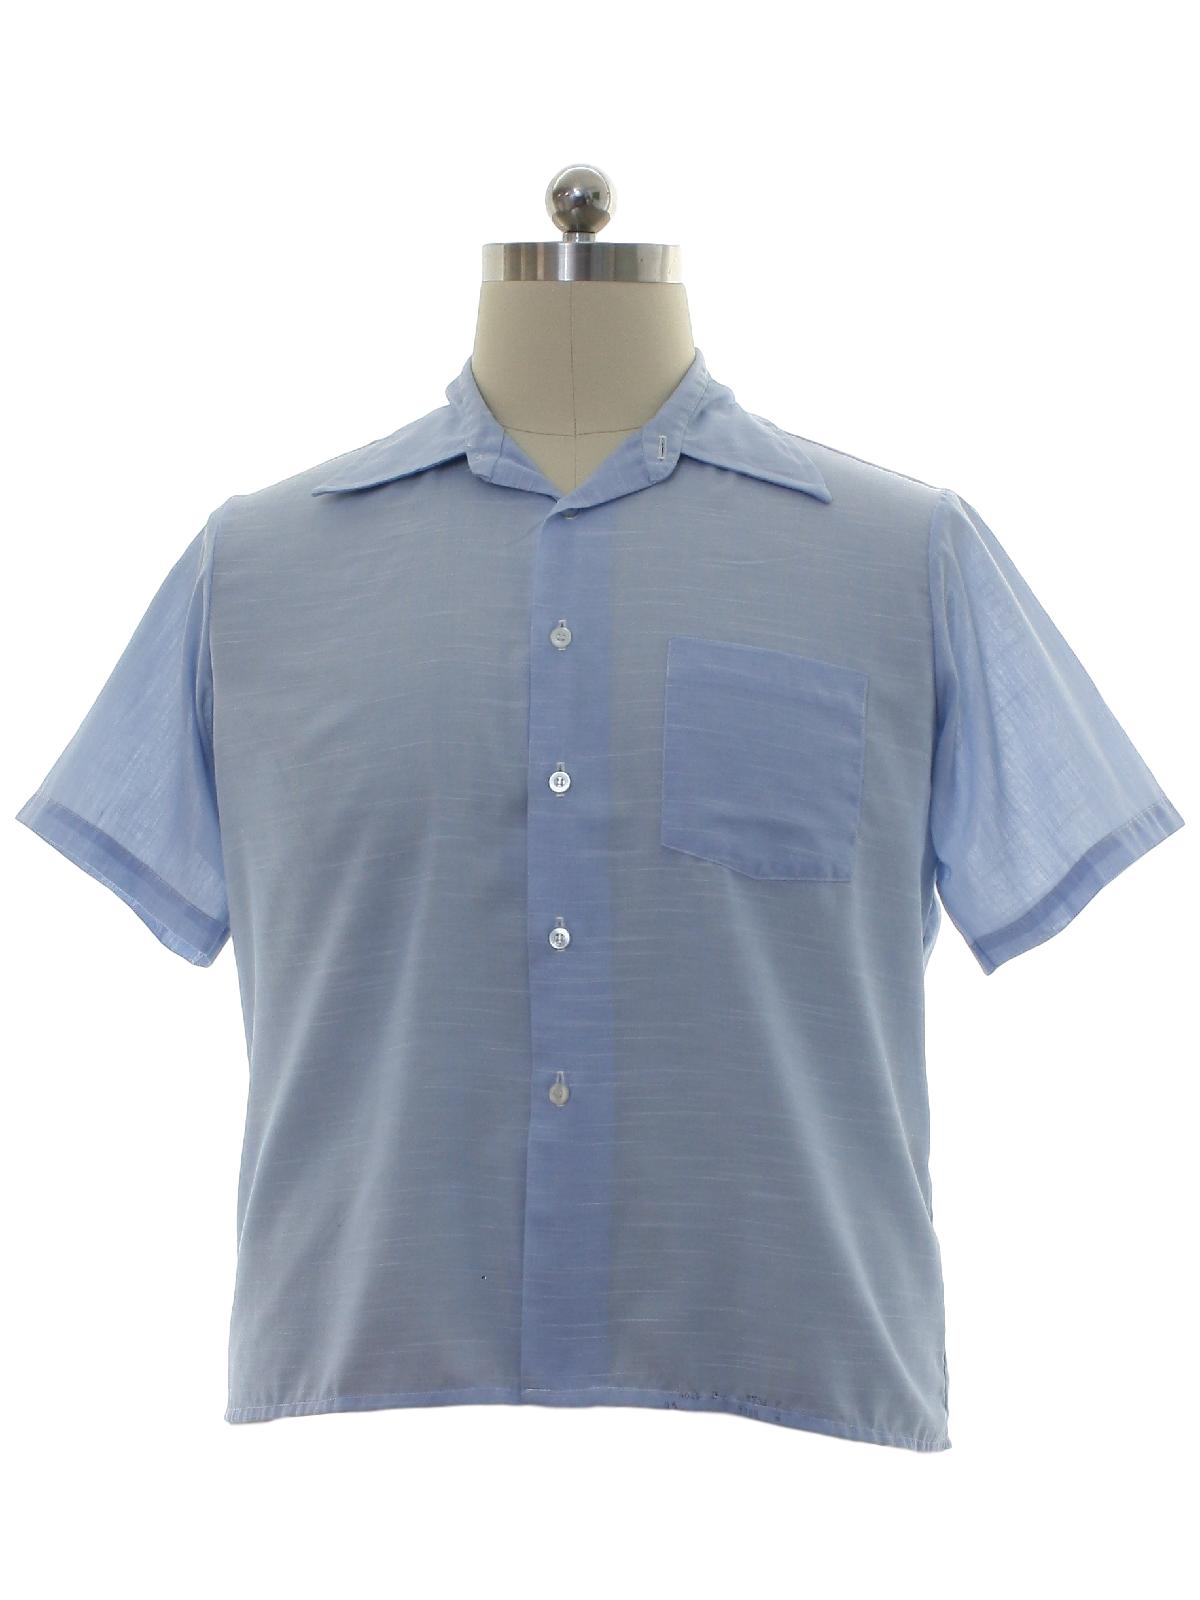 JC Penney 70's Vintage Shirt: Early 70s -JC Penney- Mens sky blue